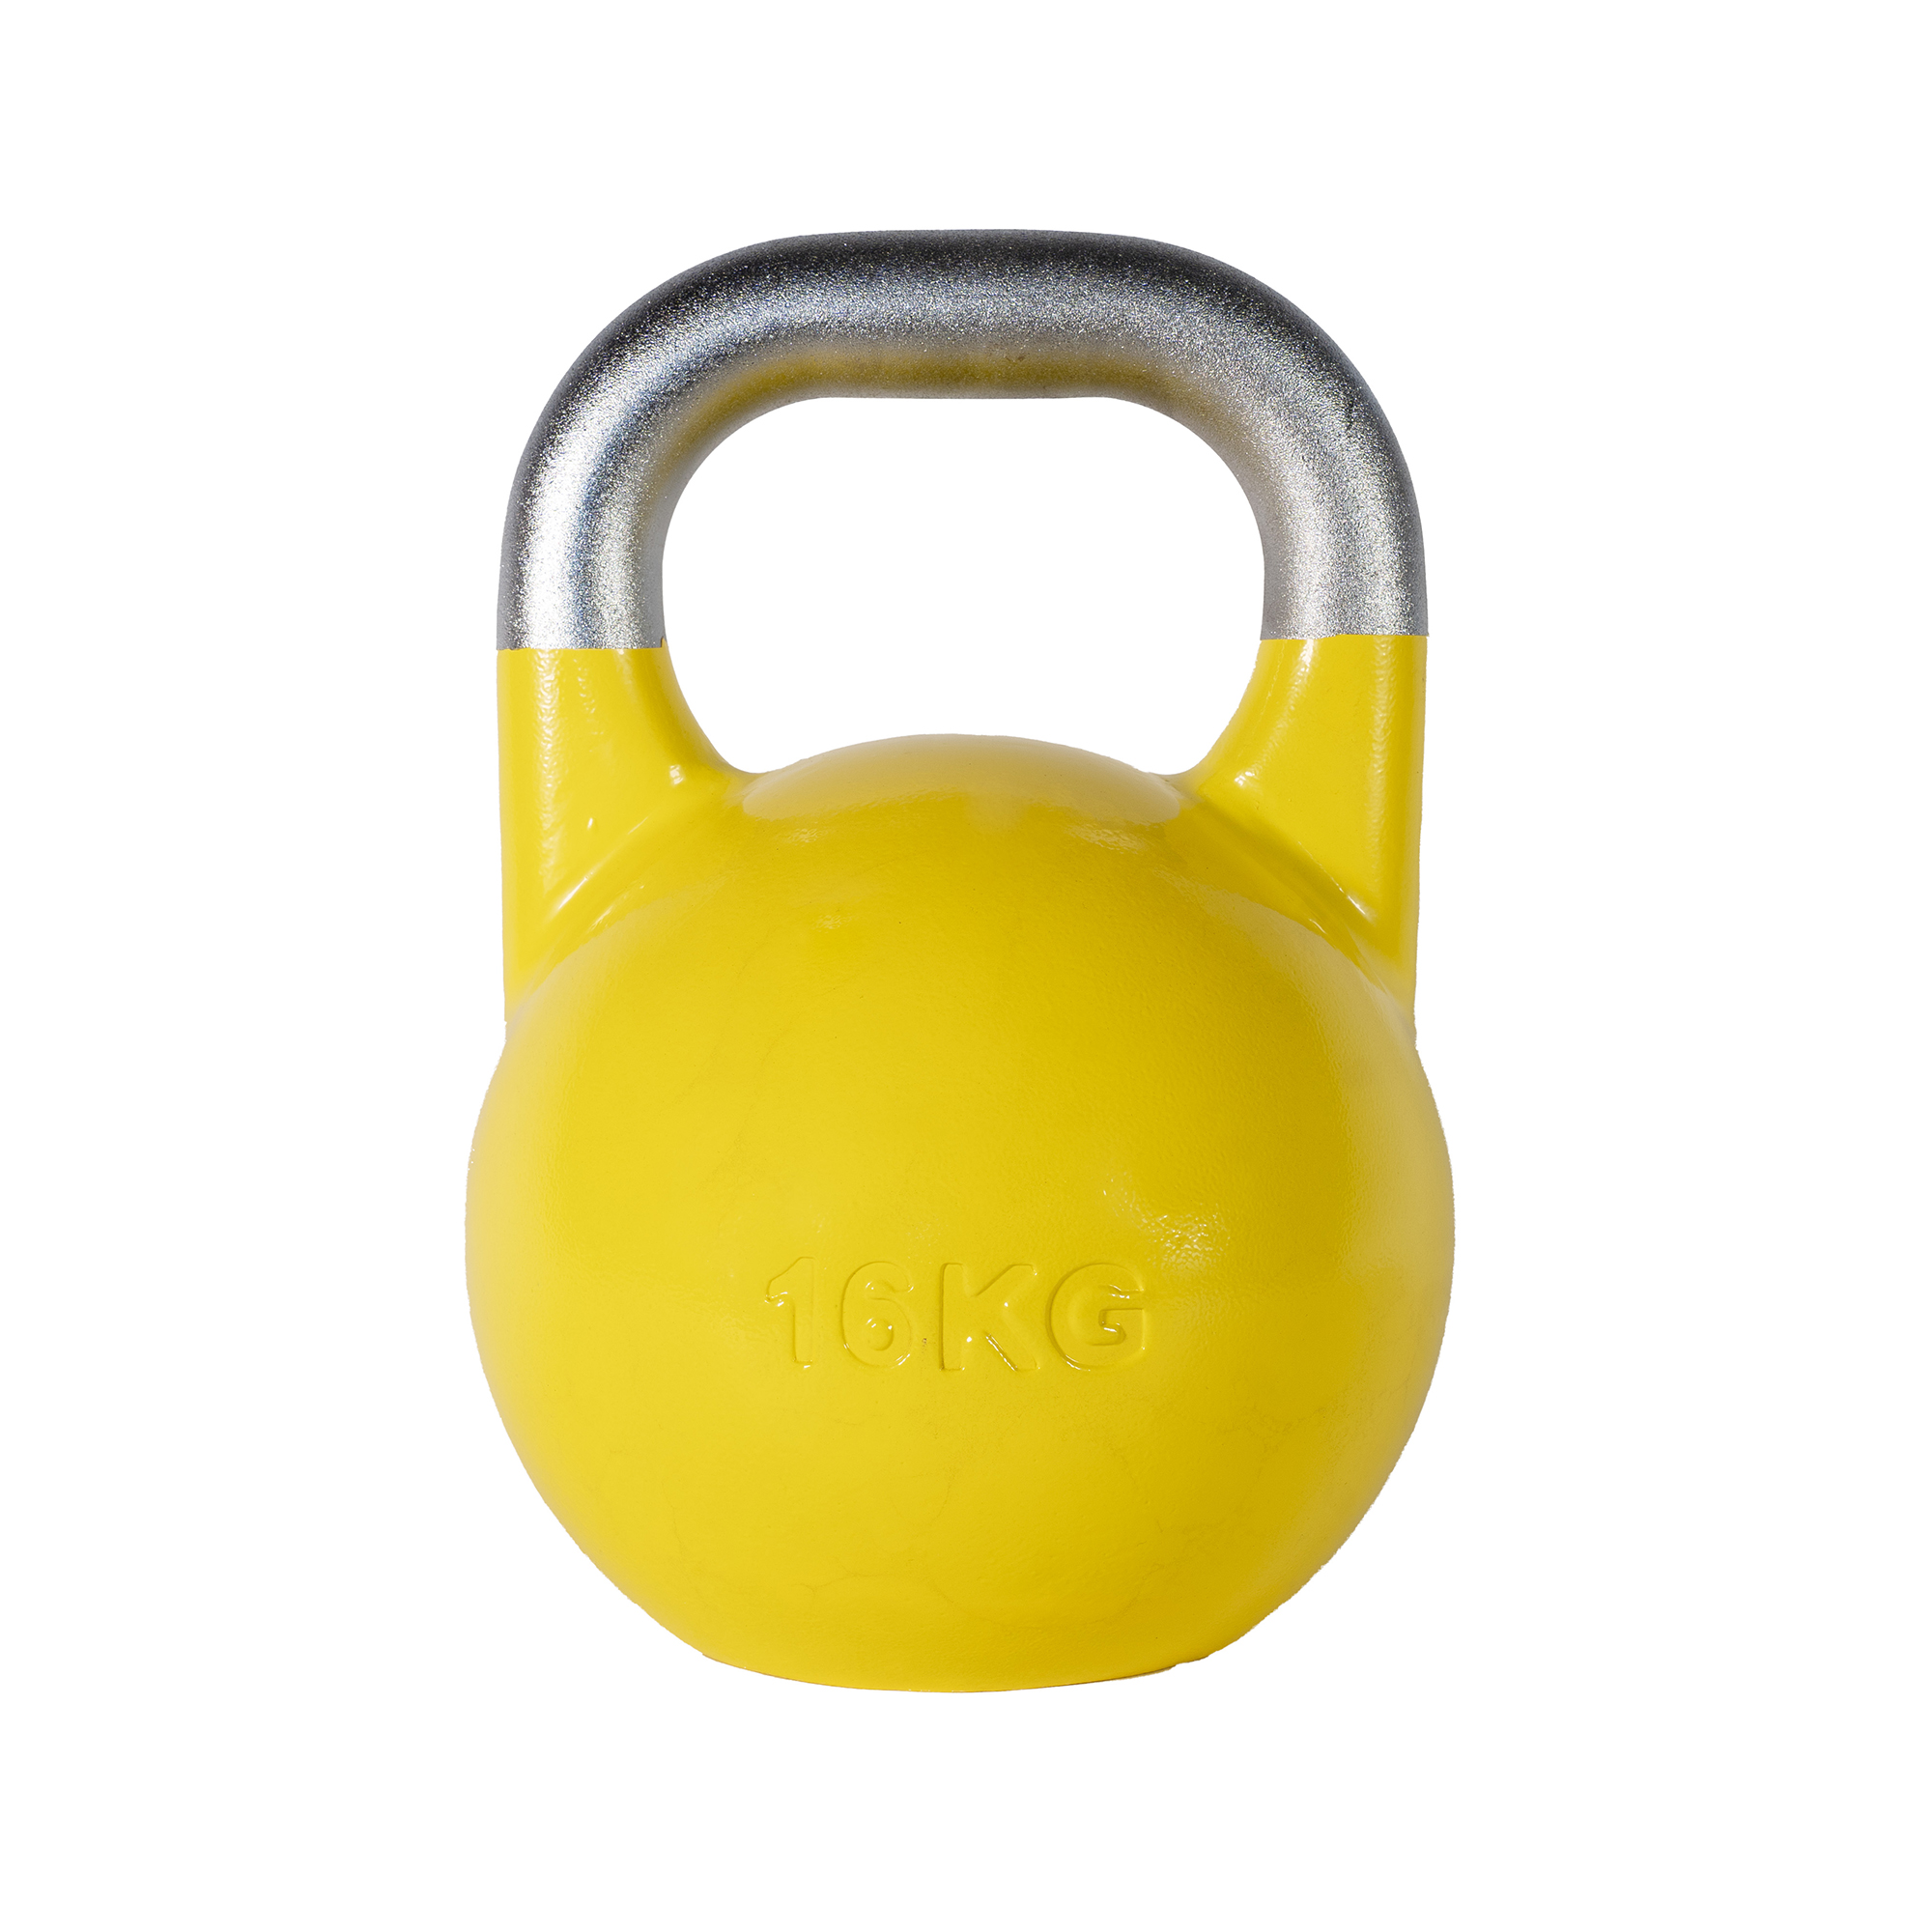 SQ&SN Competition Kettlebell (16 kg) i støbejern. Udstyr til crossfit træning, styrketræning og funktionel træning